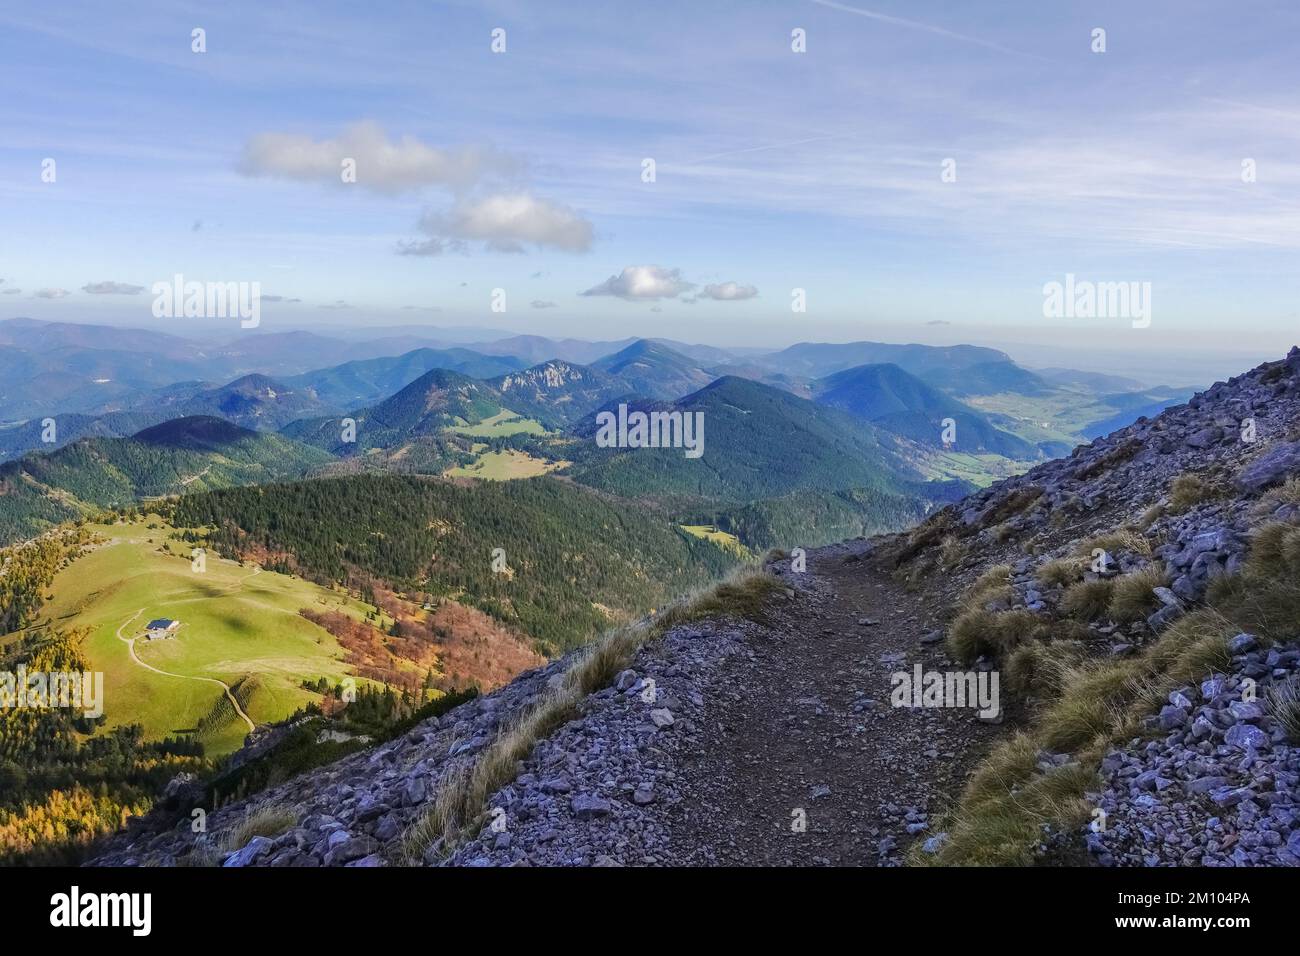 sentier incroyable sur une montagne escarpée avec une vue magnifique sur le paysage Banque D'Images